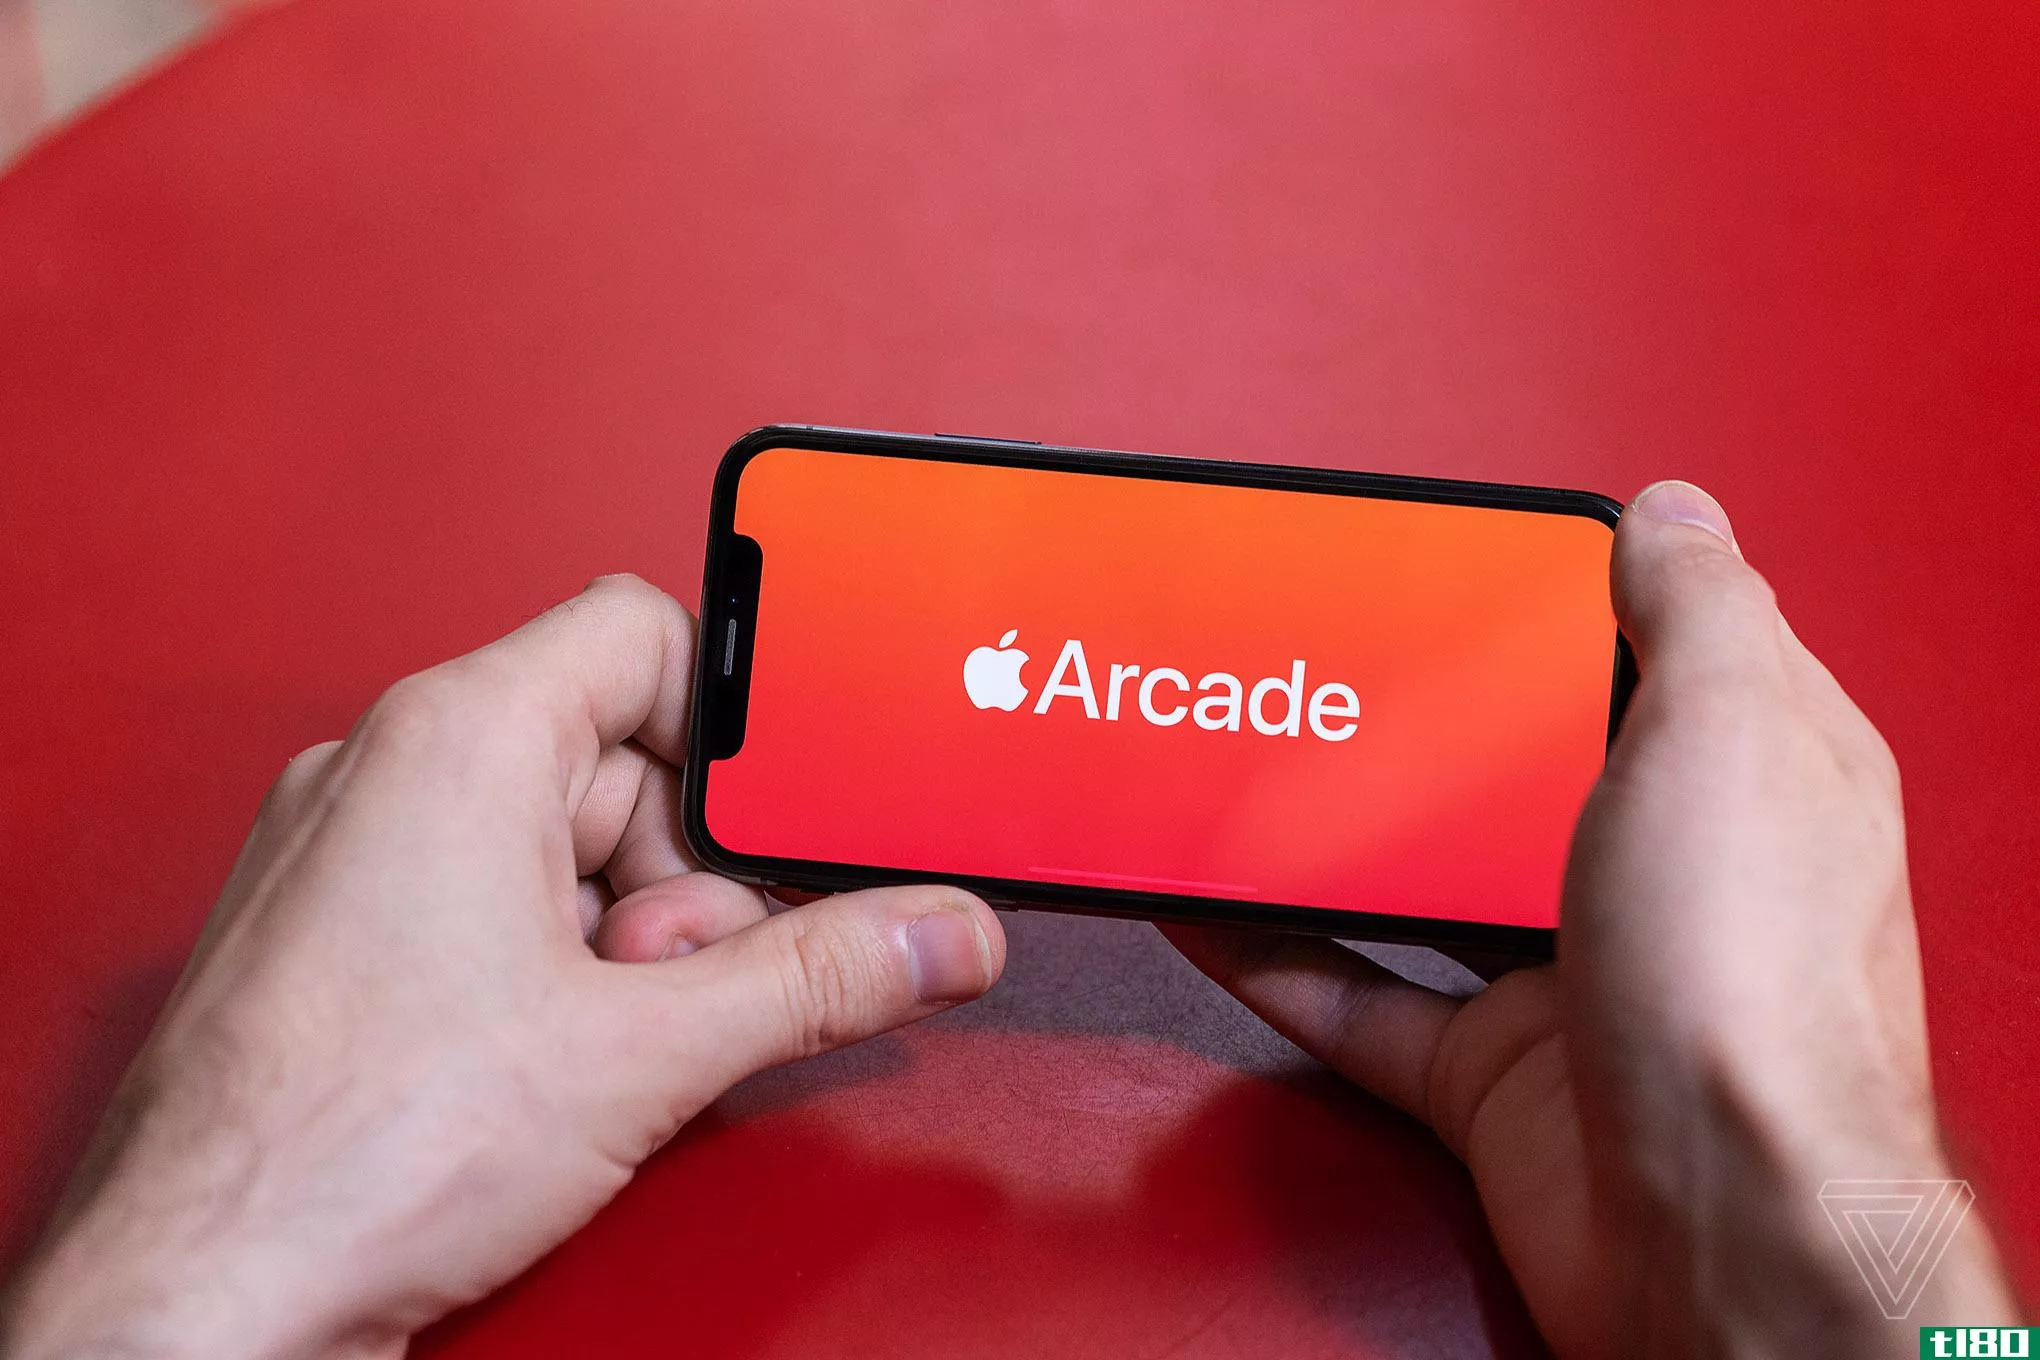 为您的新款2020 iphone或ipad提供8款出色的apple arcade游戏